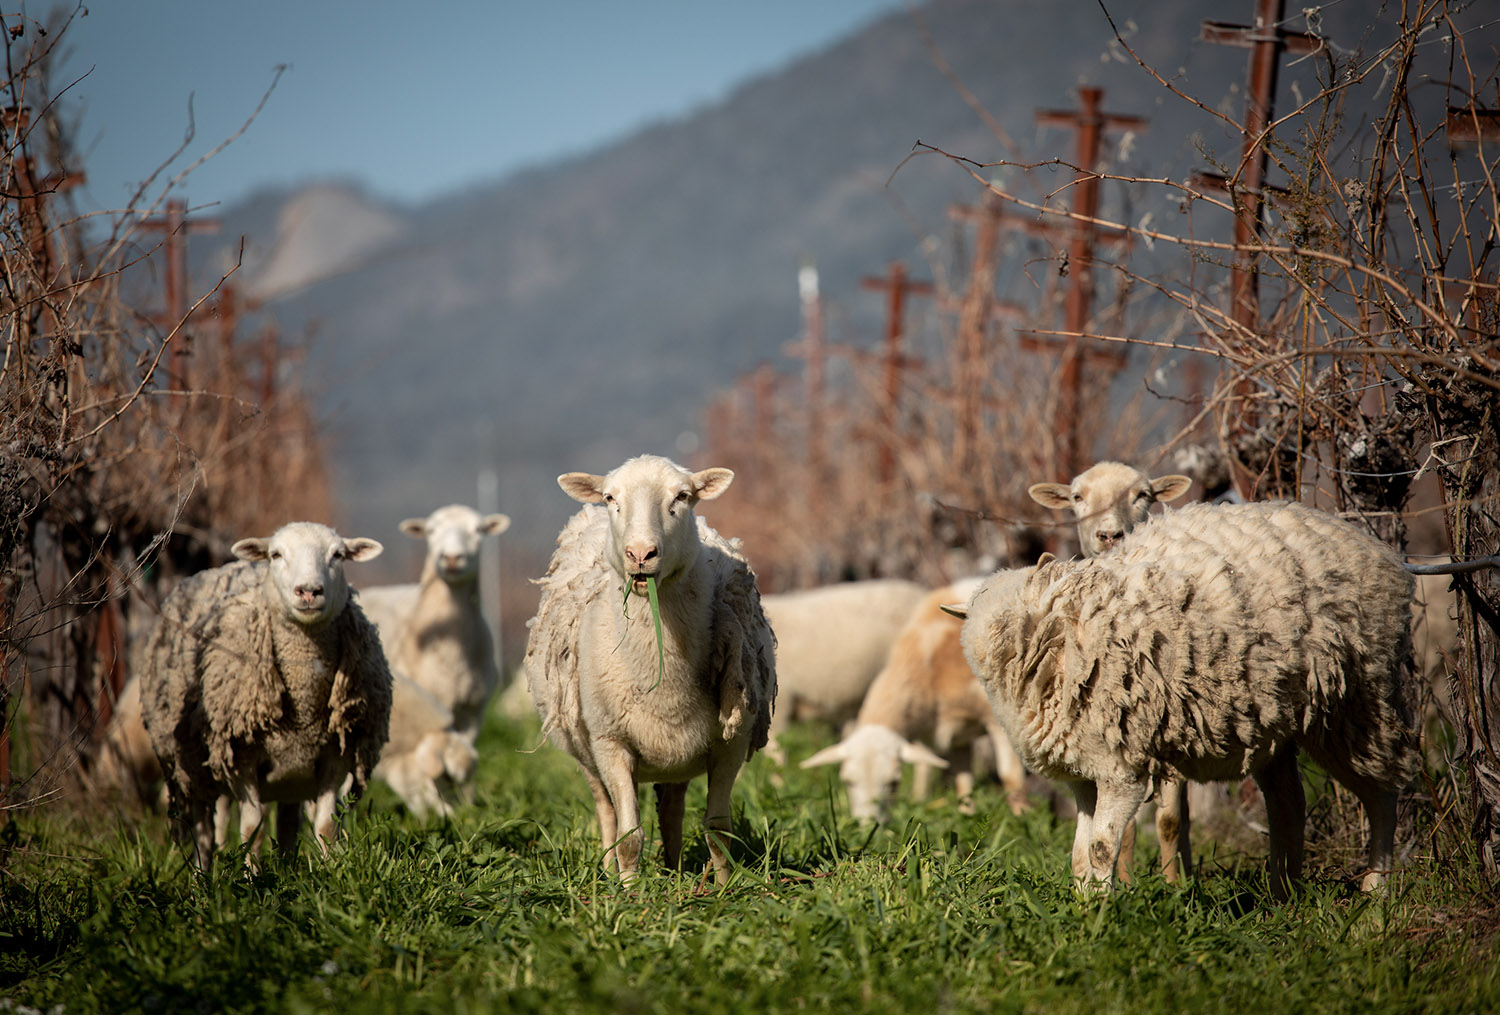 Sheep keeping the cover crops mowed at Eco Terreno